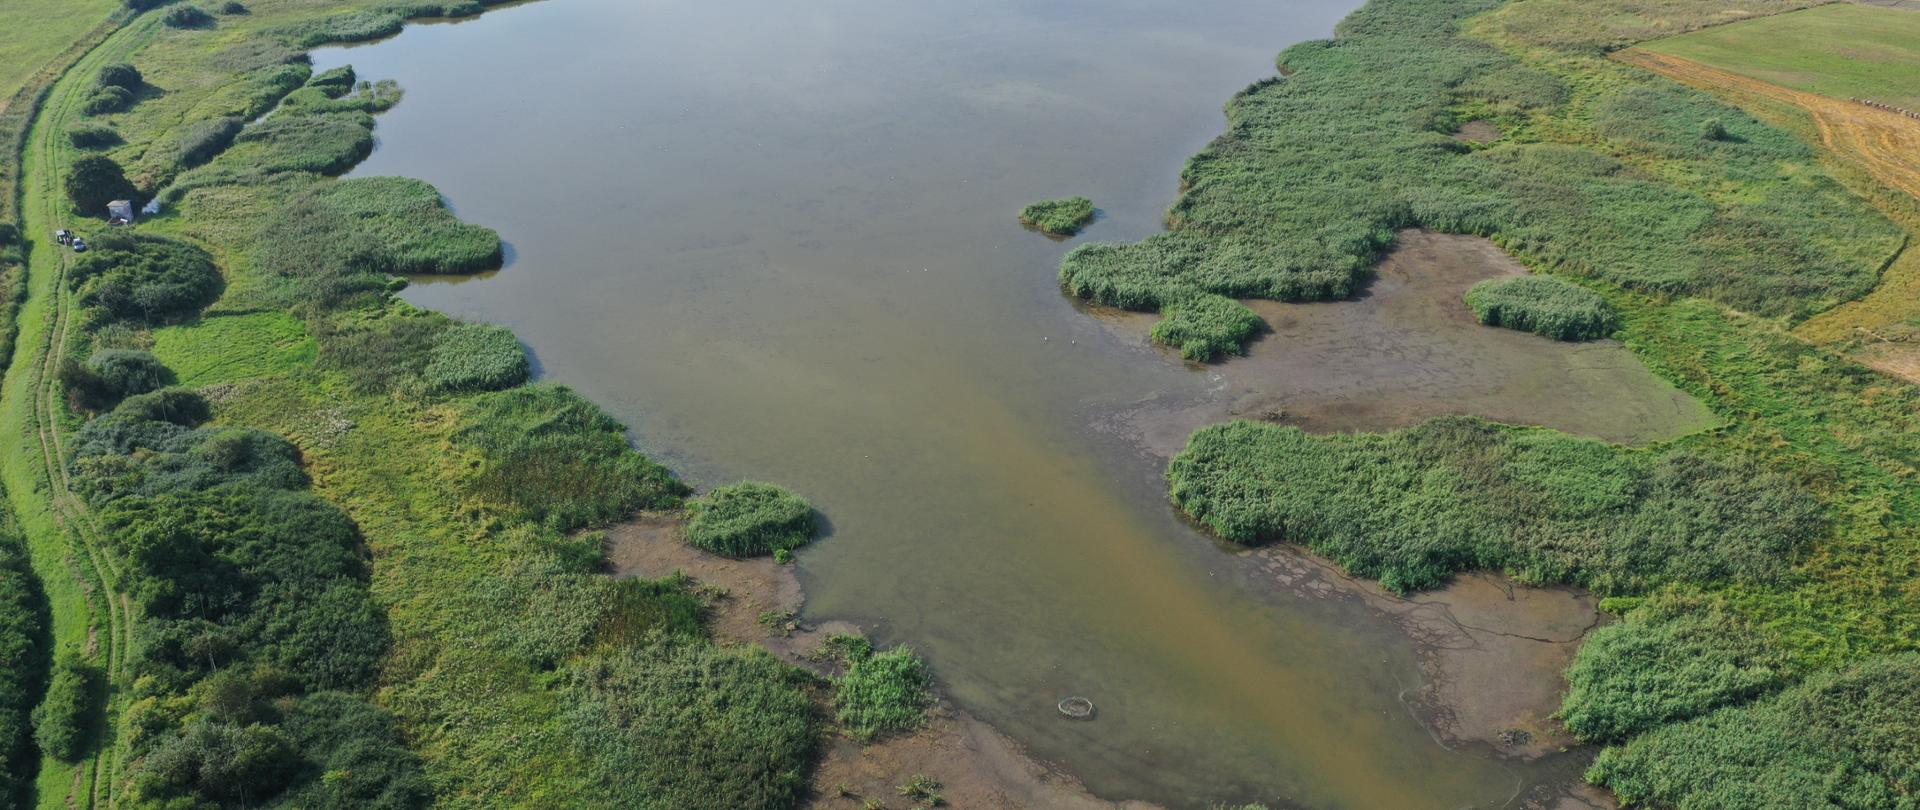 Widok z drona na całe jezioro. Woda w jeziorze zielonobrunatna.